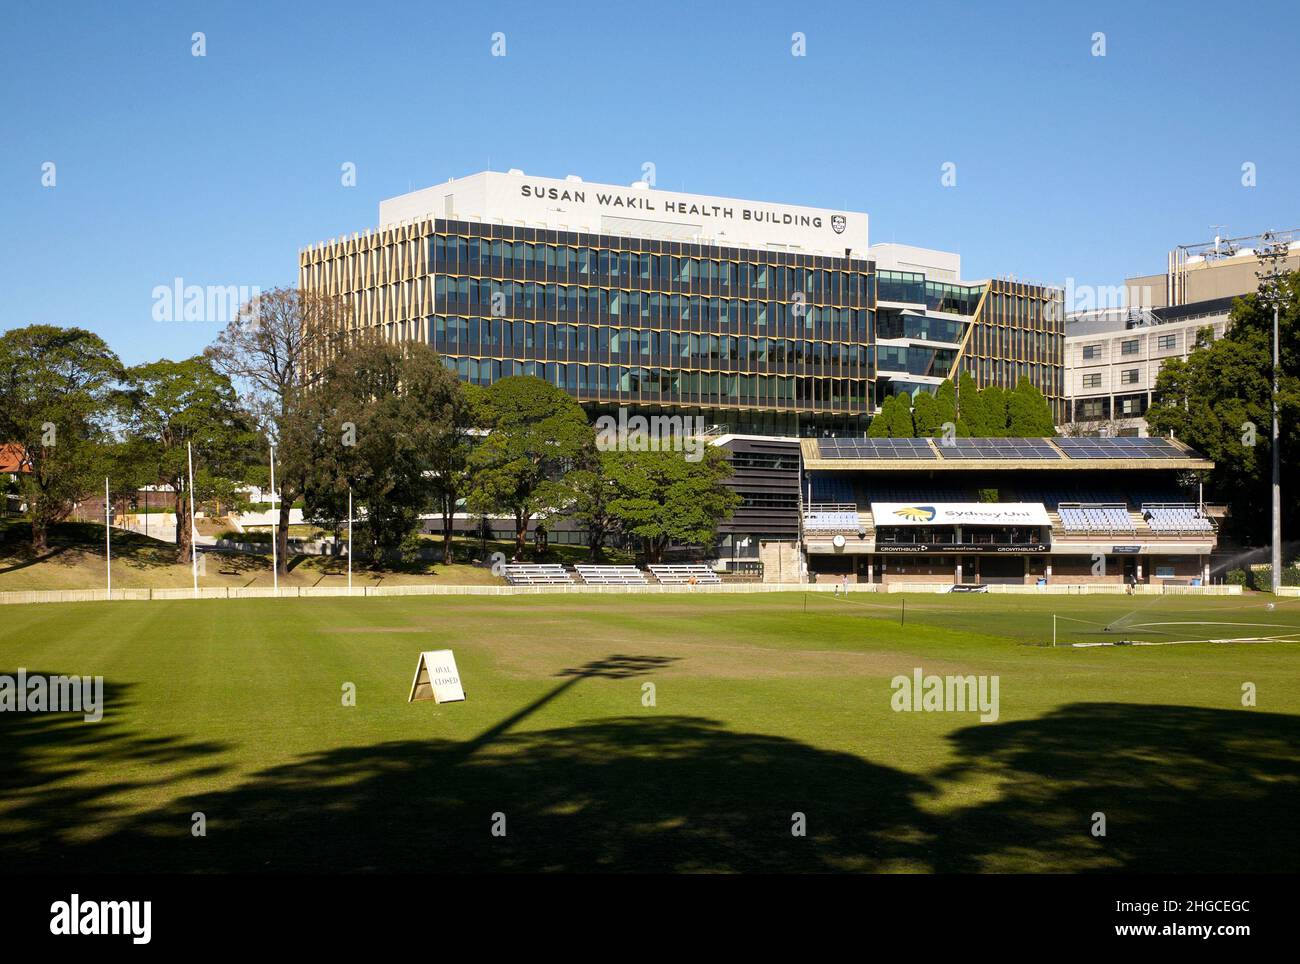 Fotografia a colori di un campo e del Susan Wakil Health Building, Western Avenue, University of Sydney, Camperdown, New South Wales, Australia, 2021. Foto Stock